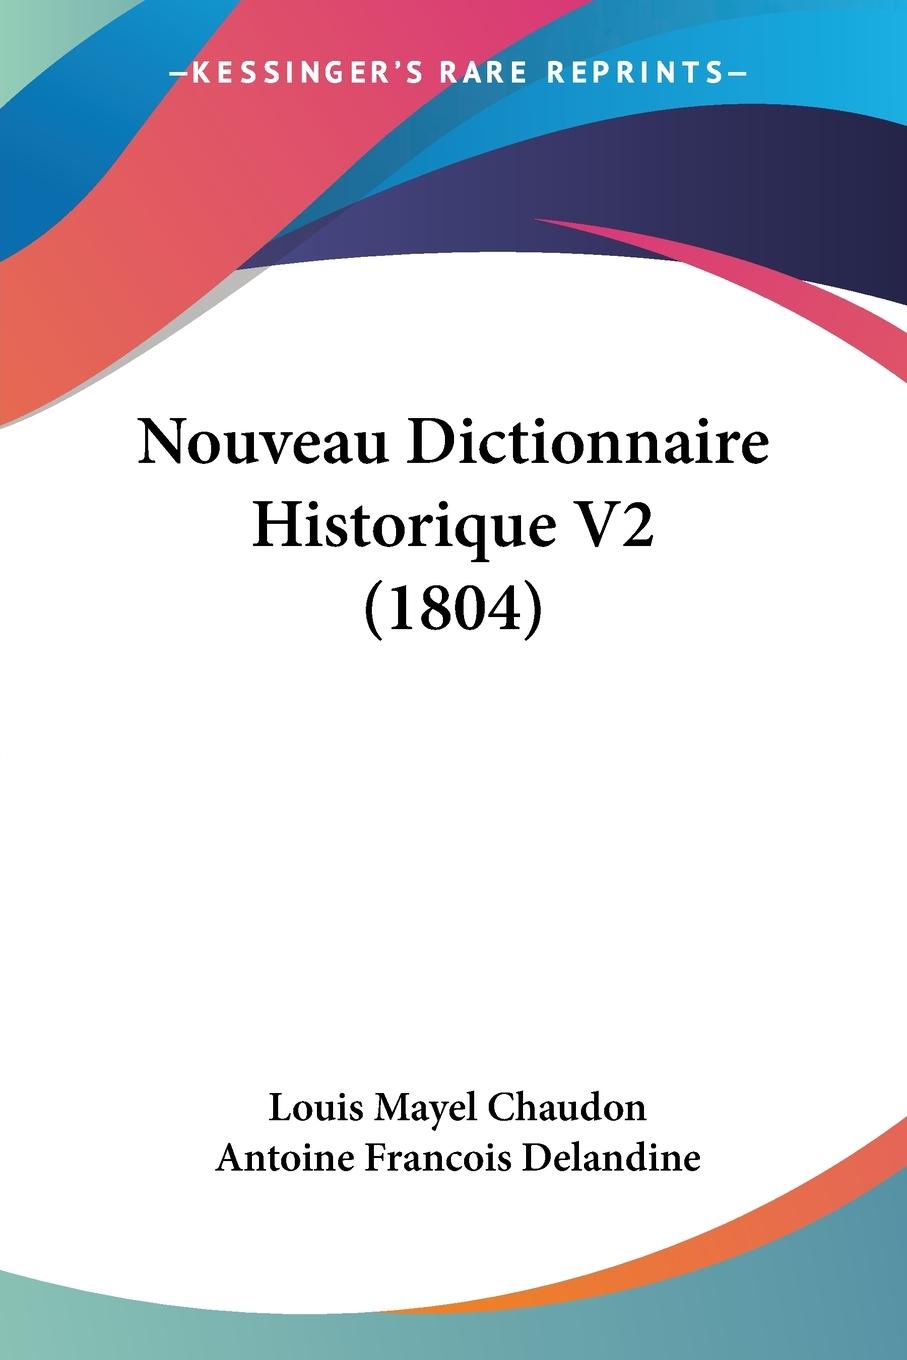 Nouveau Dictionnaire Historique V2 (1804) - Chaudon, Louis Mayel Delandine, Antoine Francois